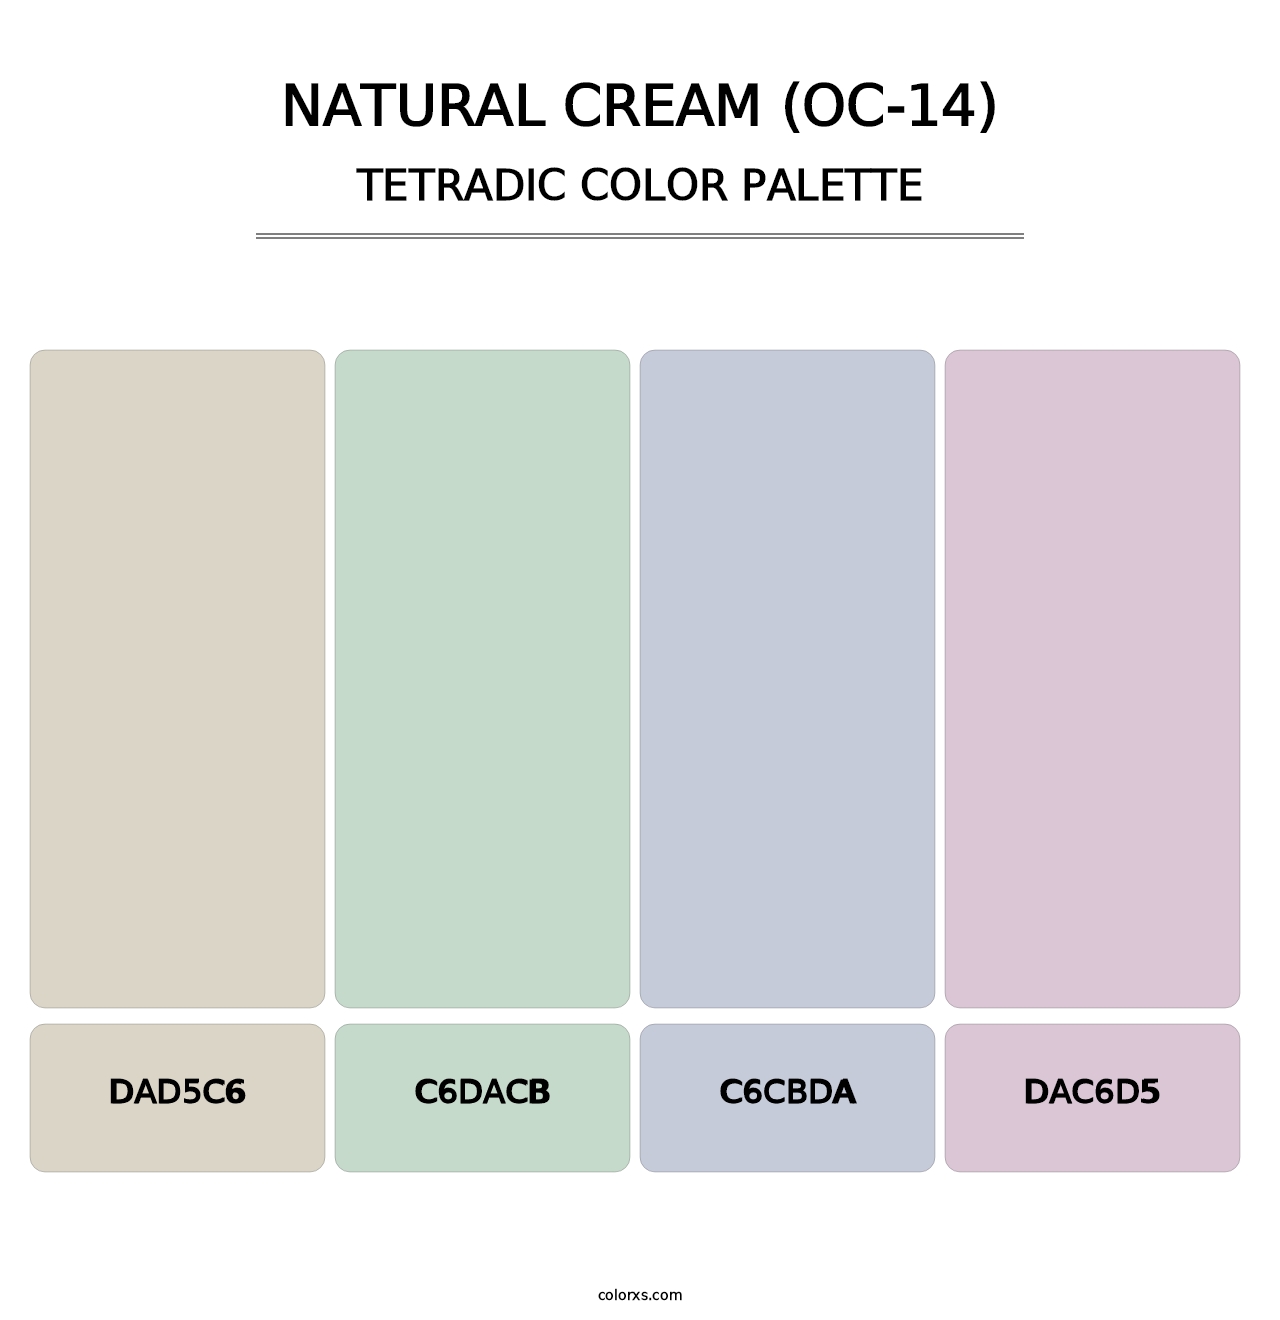 Natural Cream (OC-14) - Tetradic Color Palette